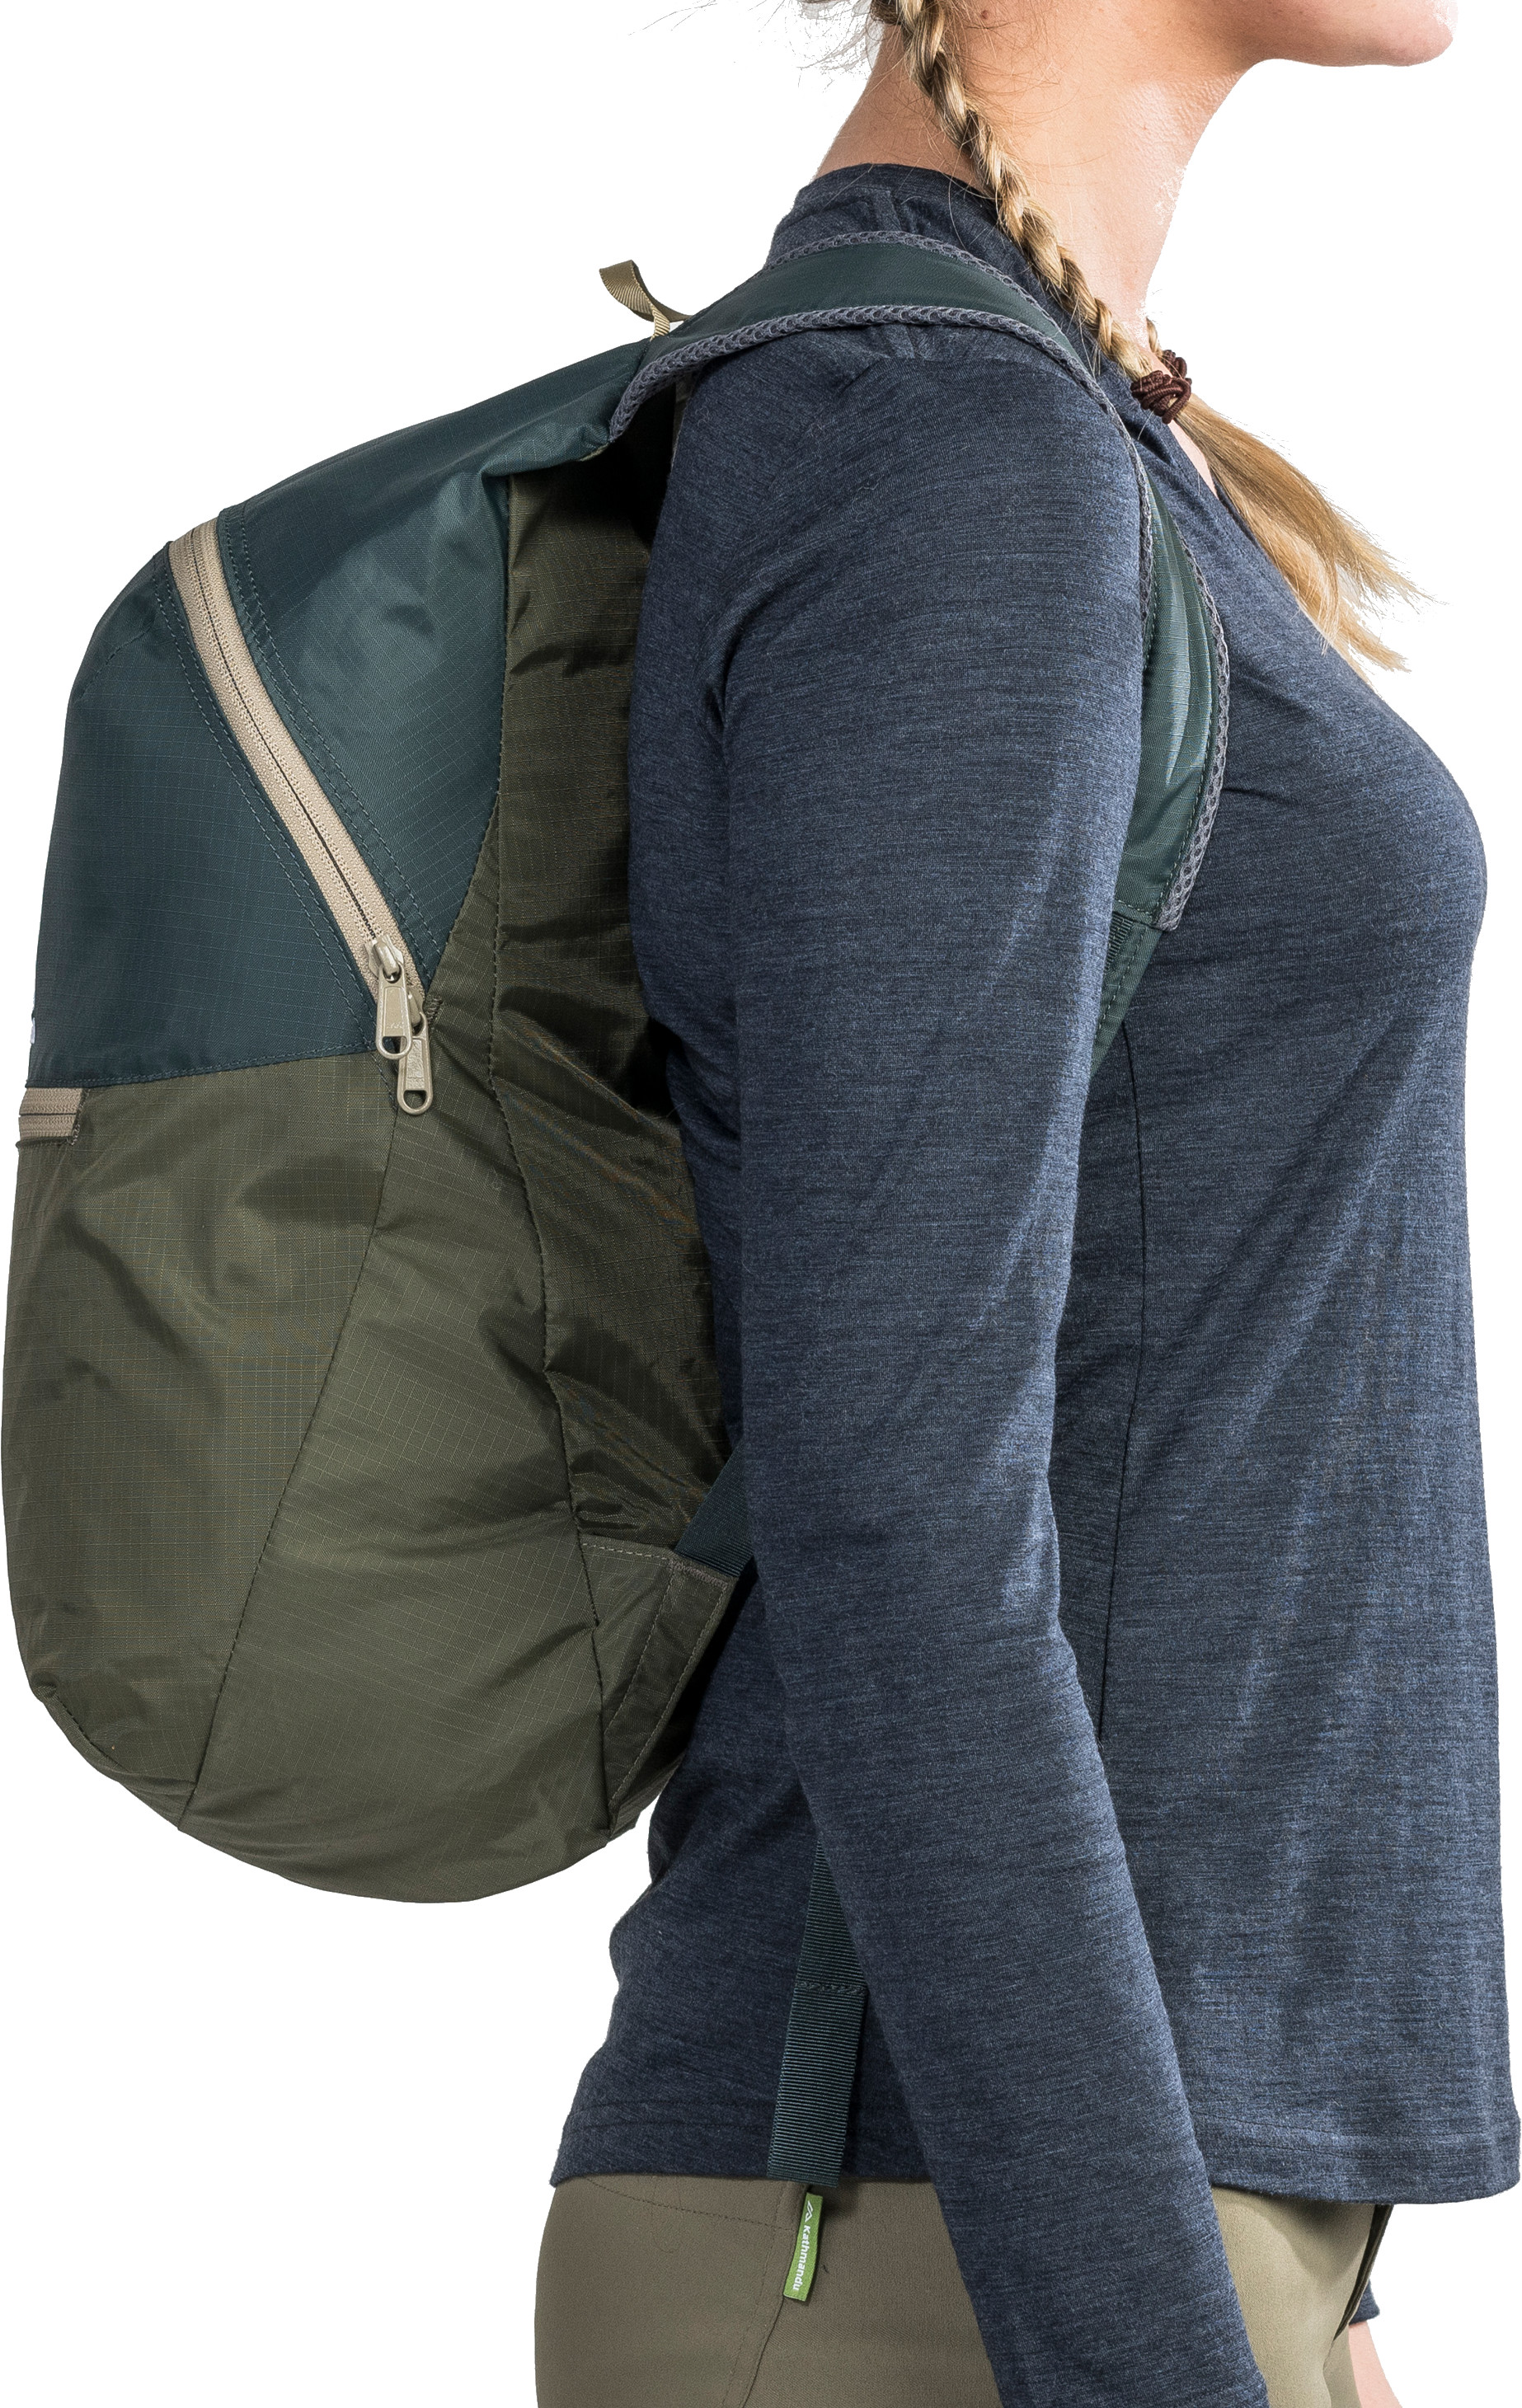 Kathmandu Pocket Pack V4 Packable Daypack Backpack